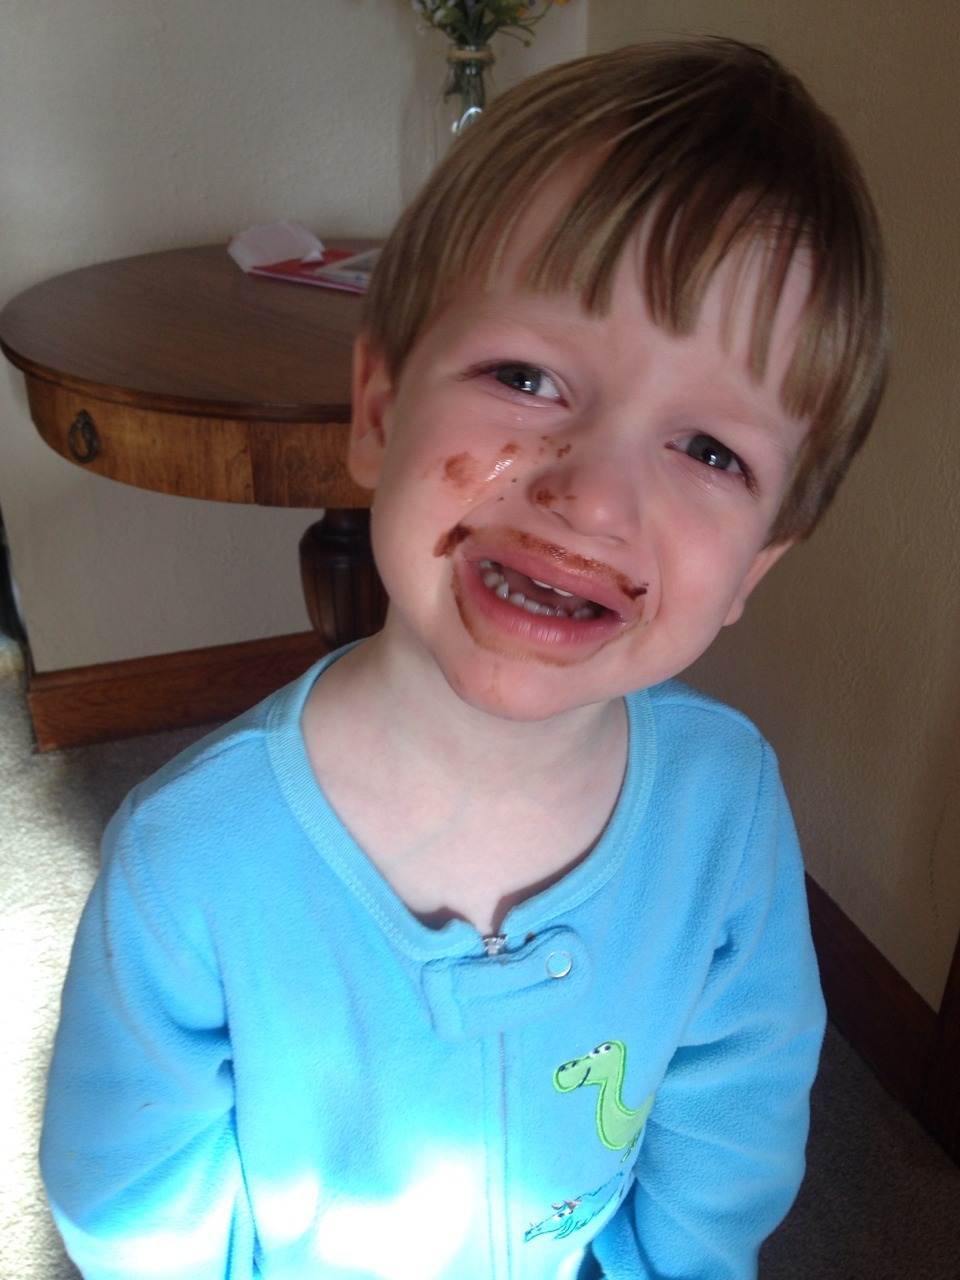 «Εγώ δεν θα τον αφήσει να σκουπίσει το πρόσωπό του σοκολάτα στο πουκάμισό μου."  Υποβλήθηκε από: Heather Κ. Τοποθεσία: Iowa, Ηνωμένες Πολιτείες